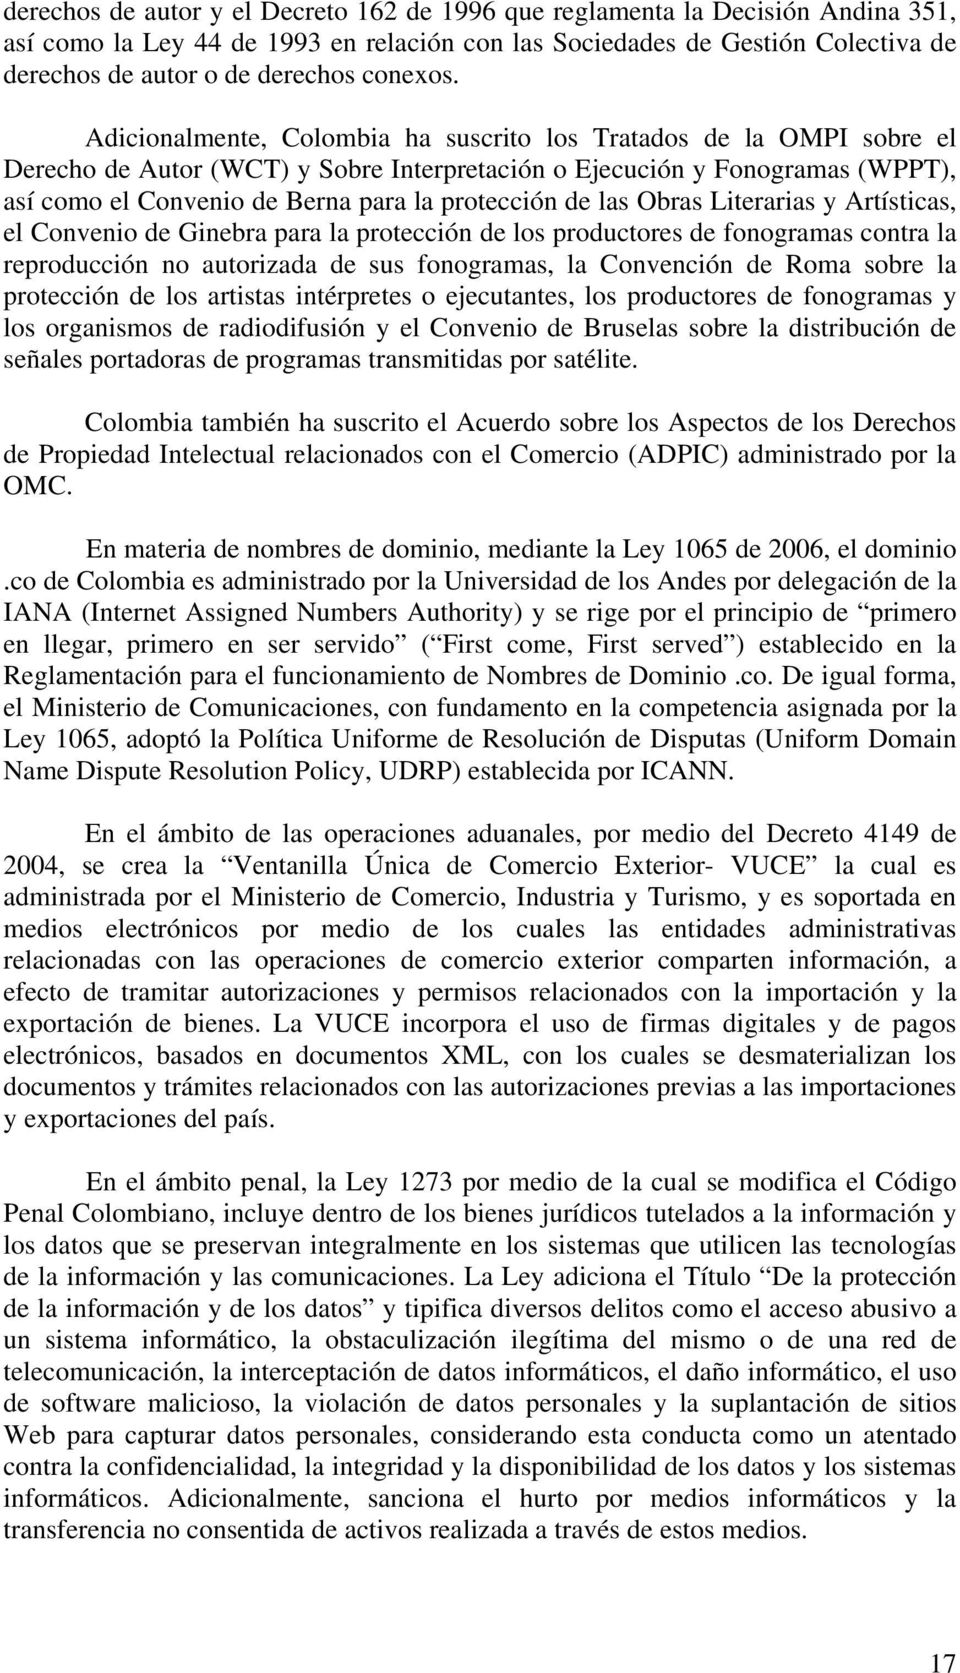 Adicionalmente, Colombia ha suscrito los Tratados de la OMPI sobre el Derecho de Autor (WCT) y Sobre Interpretación o Ejecución y Fonogramas (WPPT), así como el Convenio de Berna para la protección